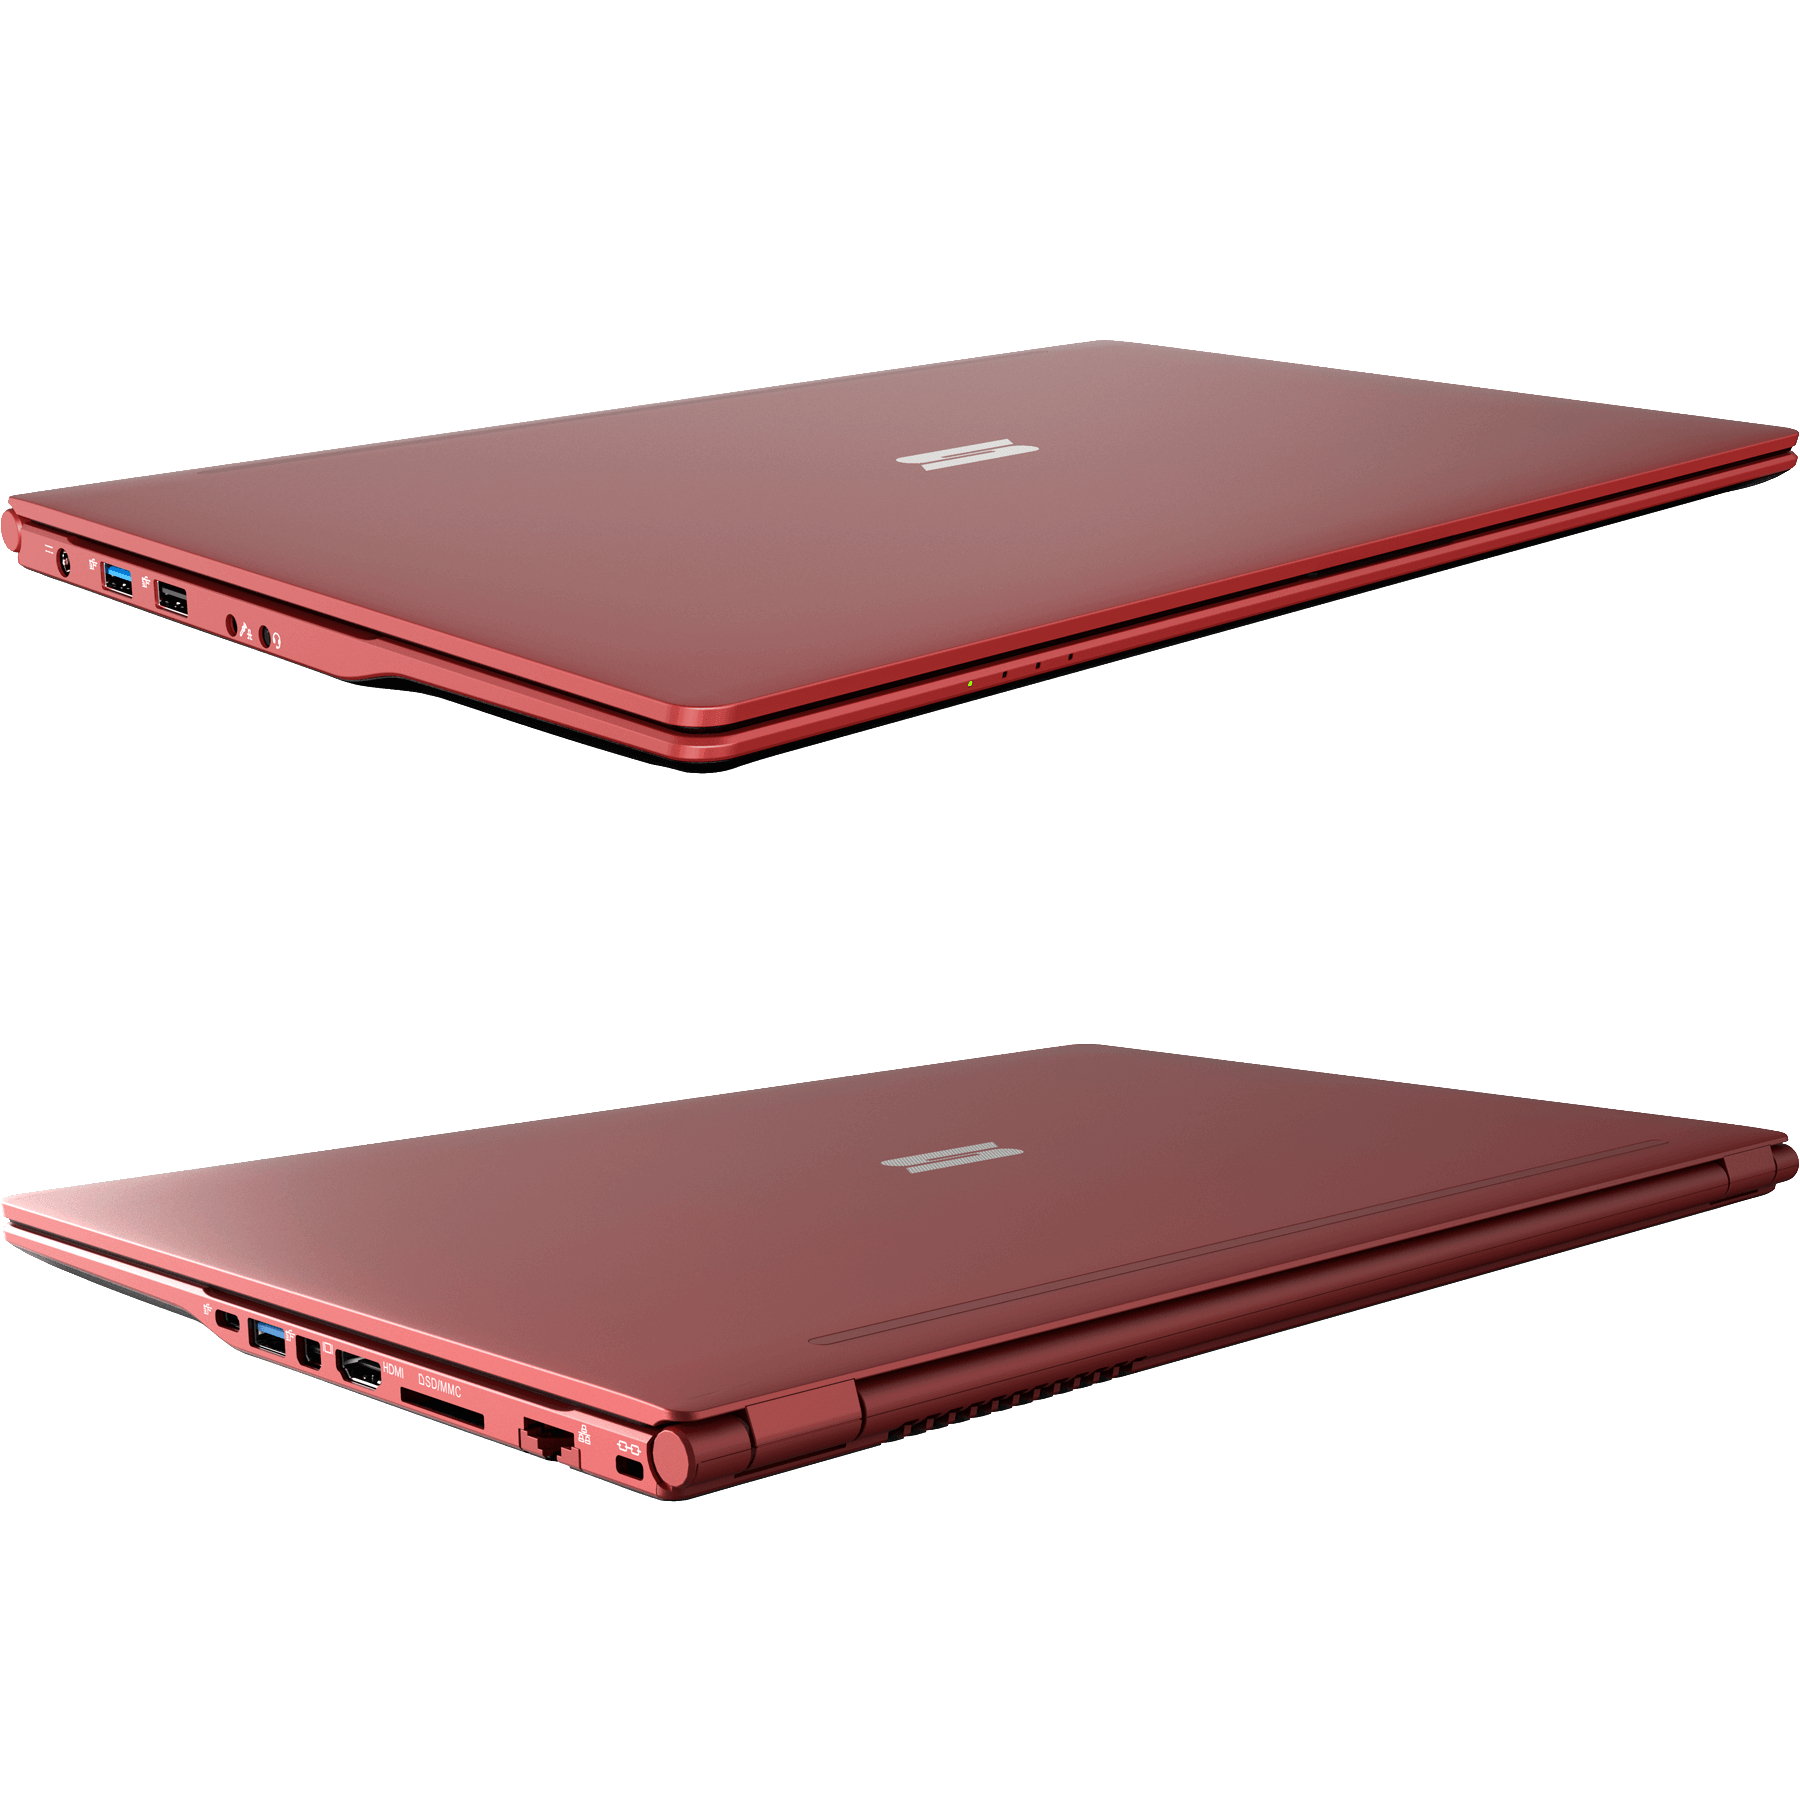 SCHENKER SLIM 15 L19hvf, Intel - Display, Notebook RED Rot GB RAM, mit i5 Grafik, Zoll UHD Intel® 15,6 Core™ 16 500 mSSD, GB Prozessor